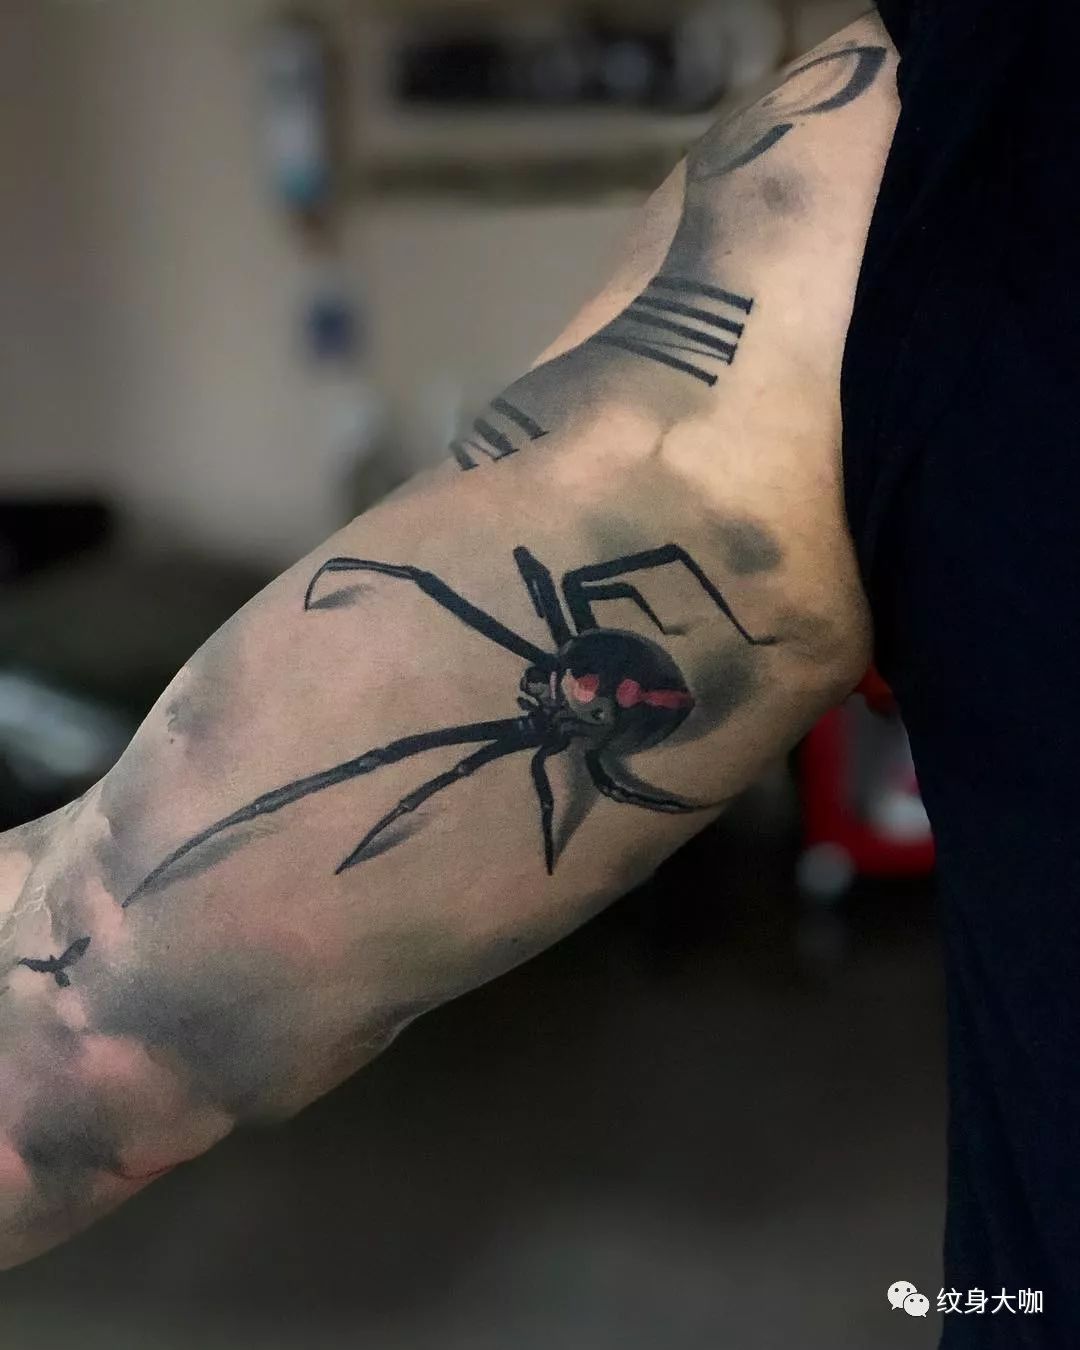 纹身手稿素材第522期：蜘蛛_纹身百科 - 纹身大咖